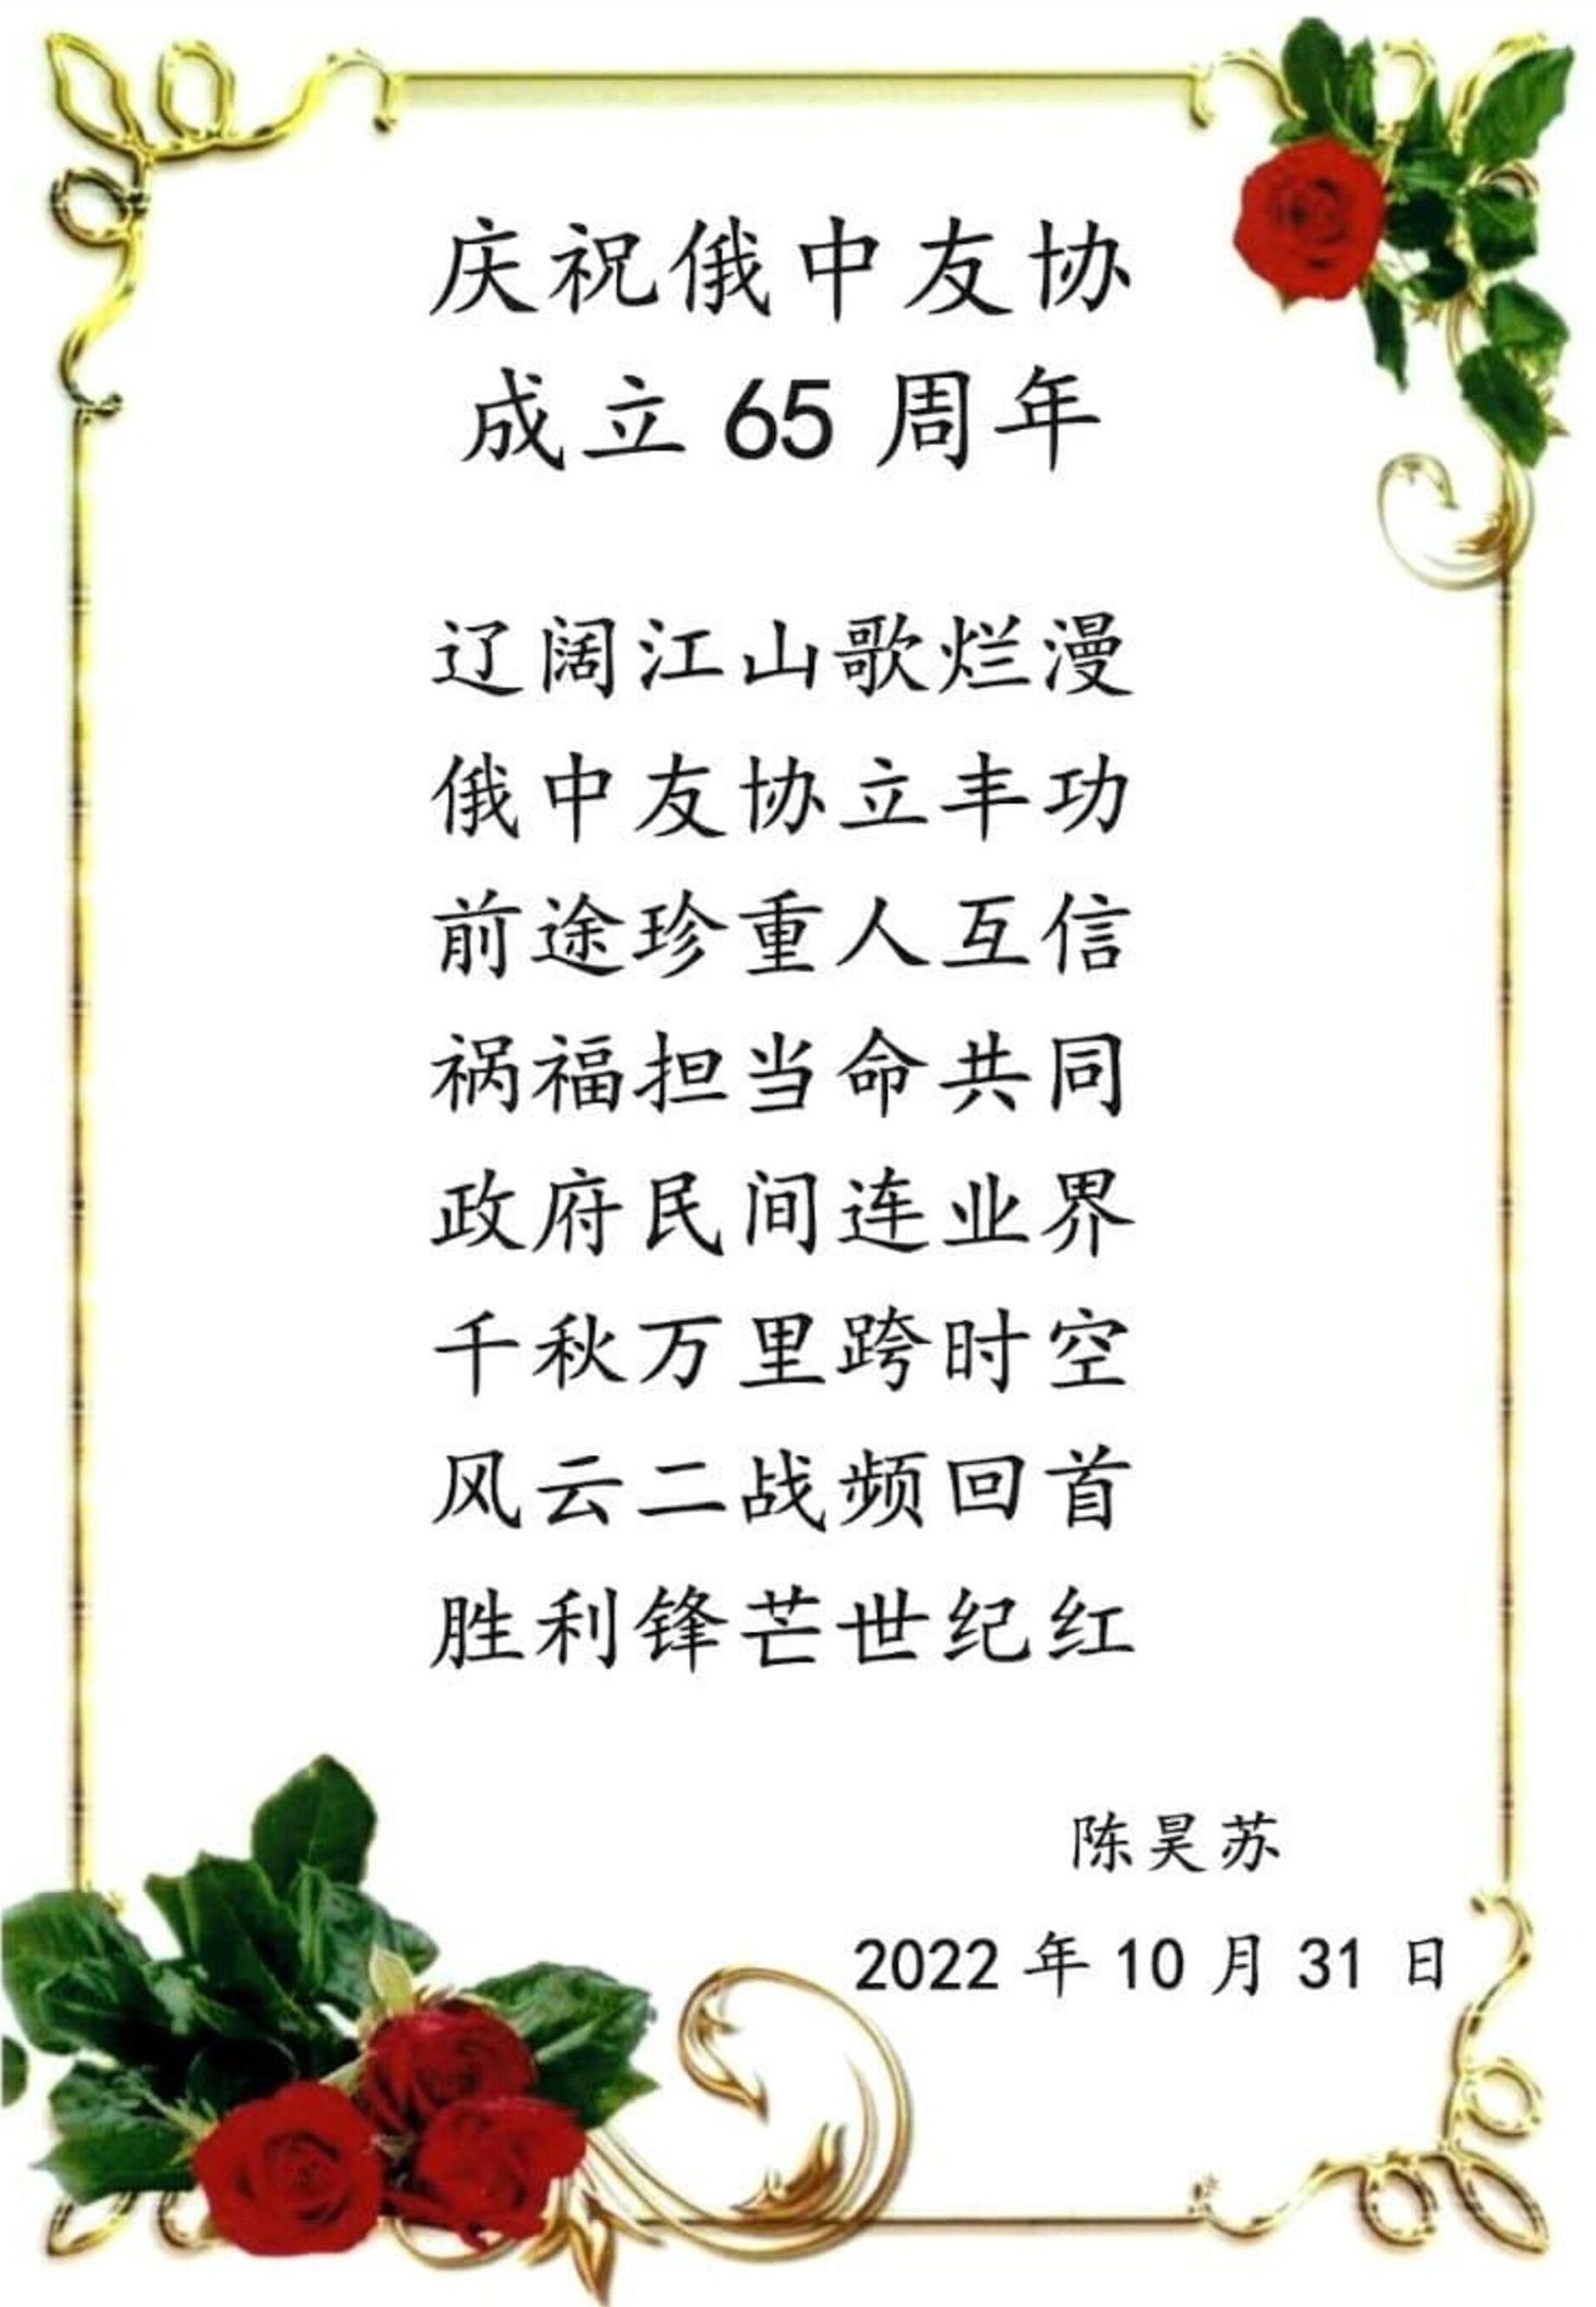 陳昊蘇的詩詞賀卡 - 俄羅斯衛星通訊社, 1920, 04.11.2022